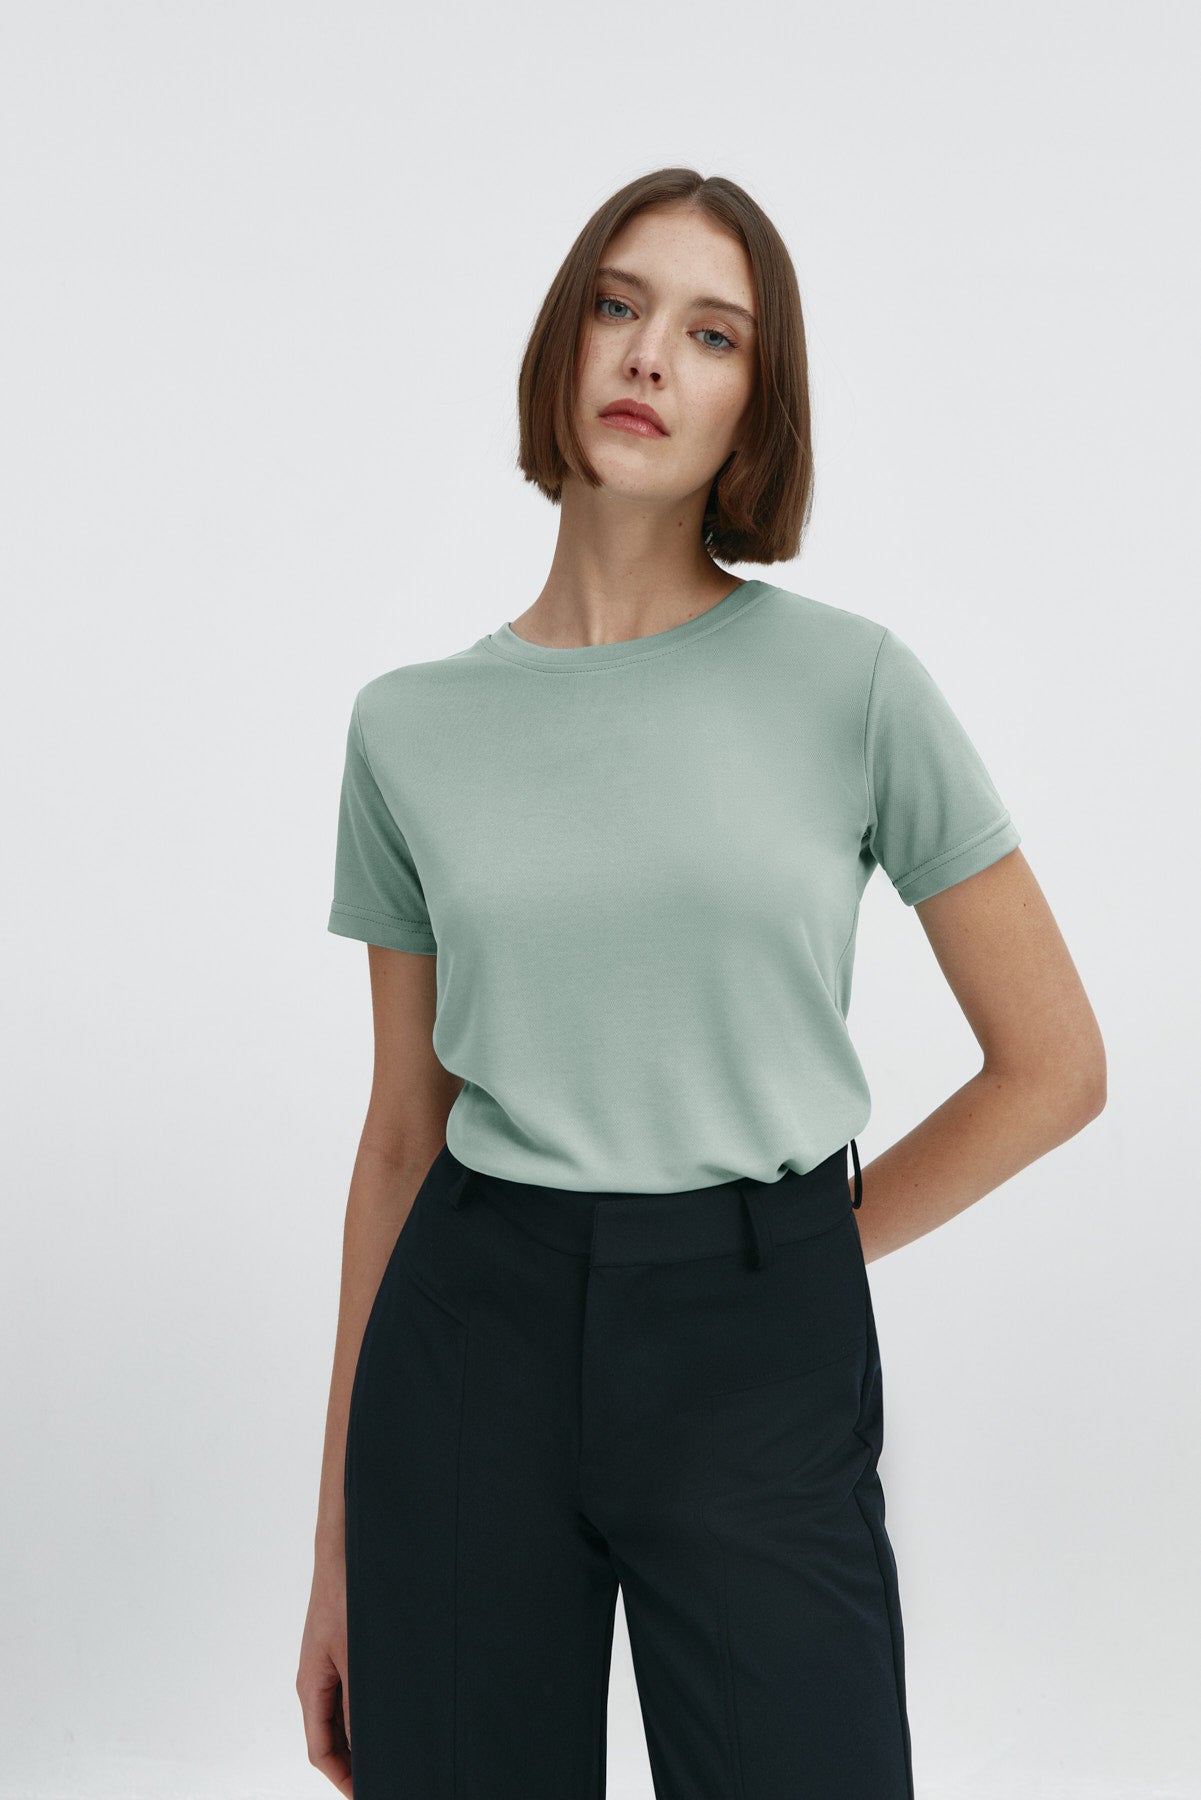 Camiseta básica de mujer verde cuarzo de manga corta y cuello redondo, perfecta para cualquier look. Foto frente